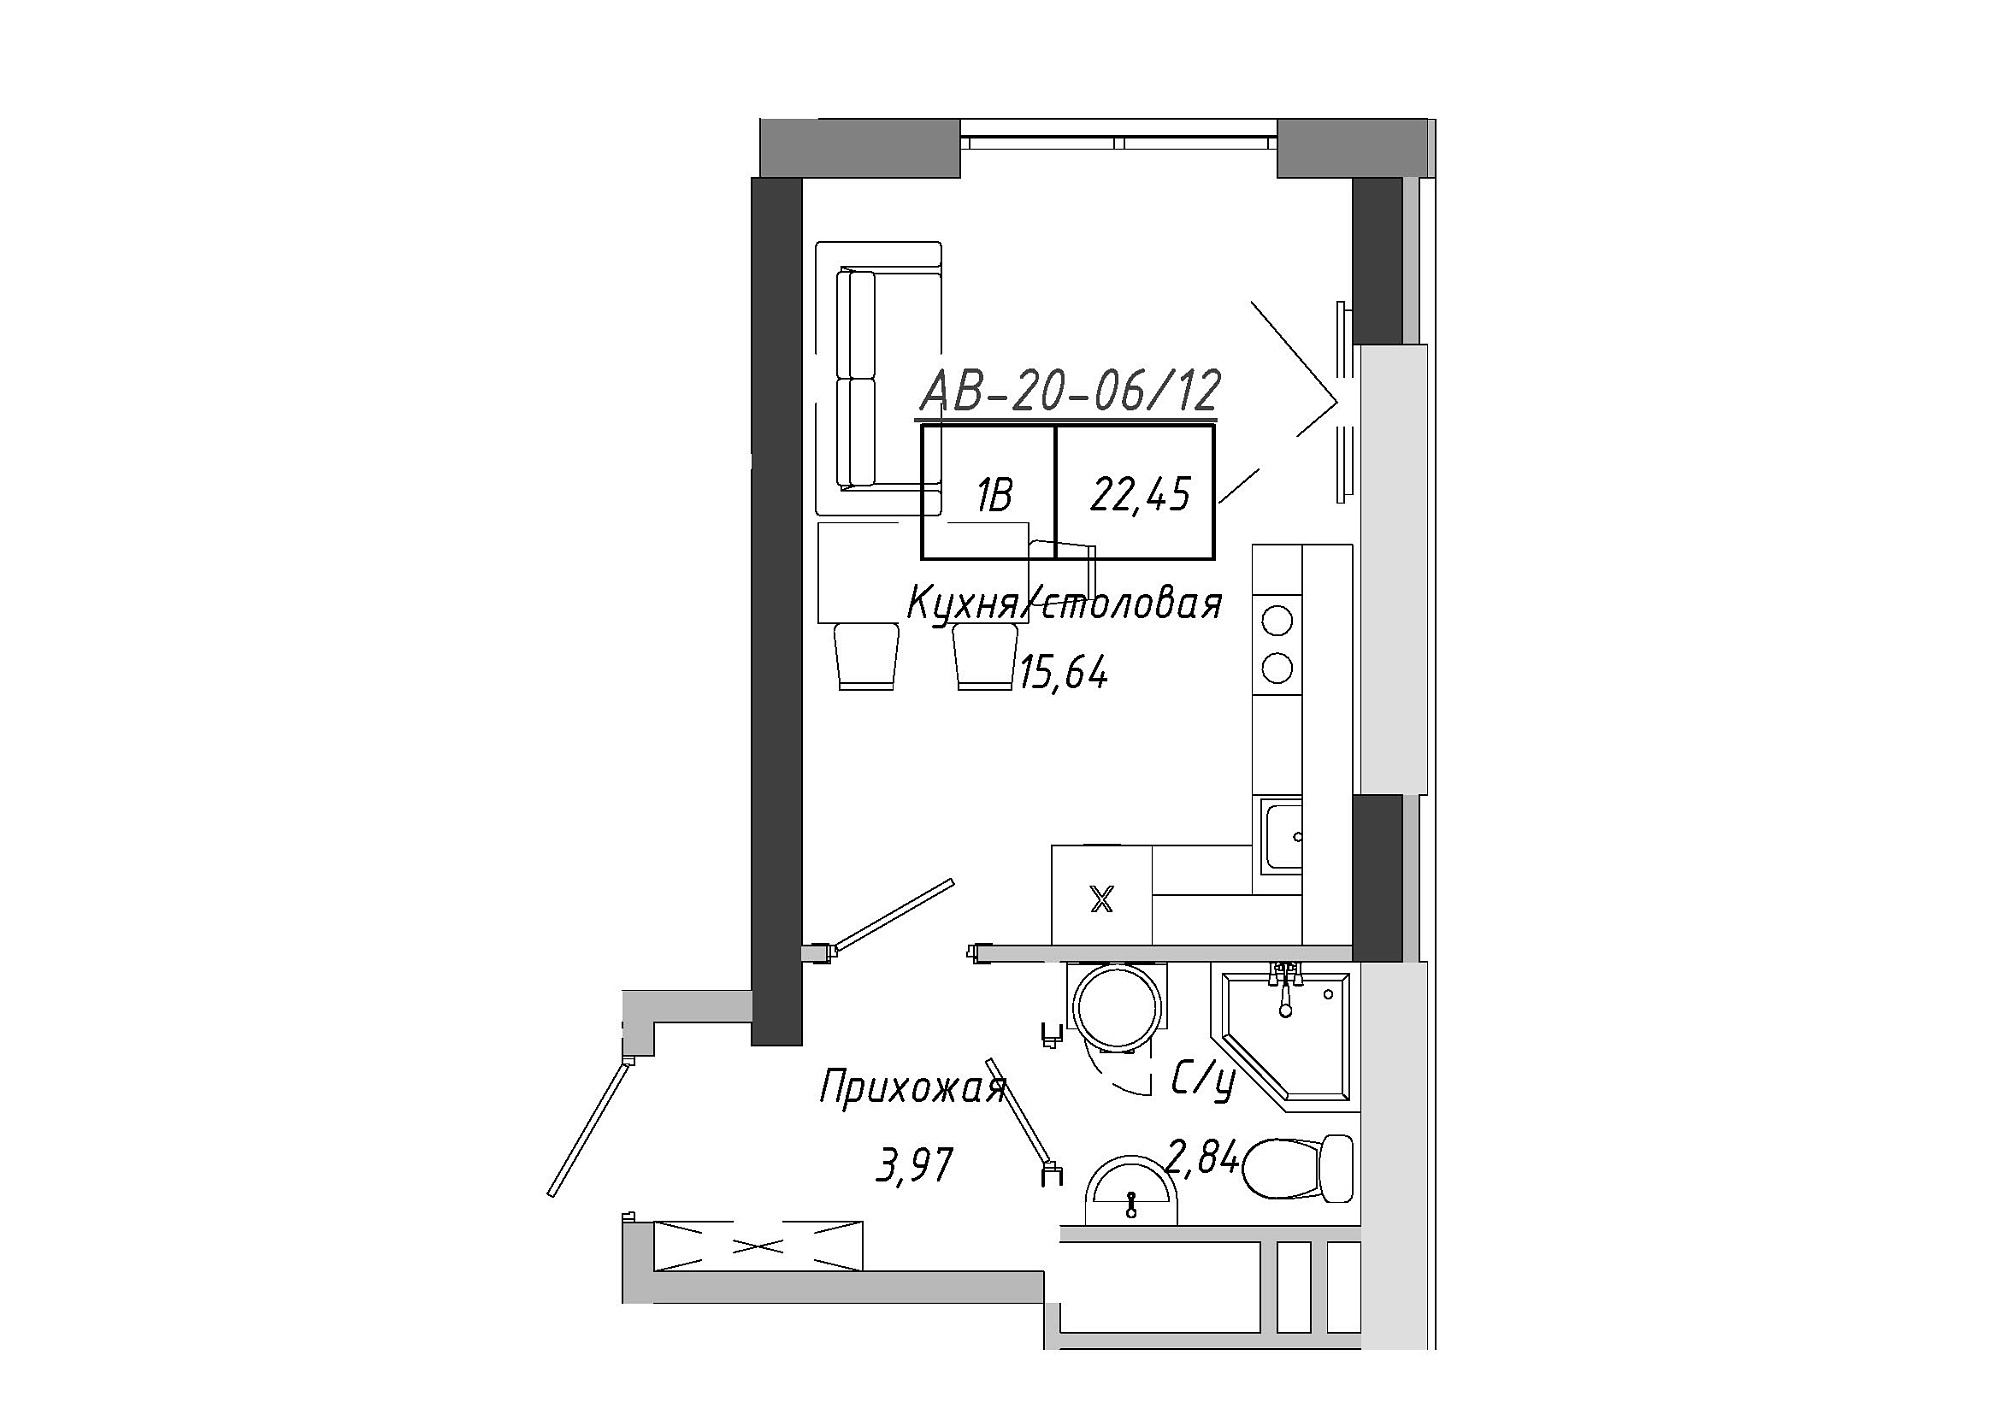 Планування Smart-квартира площею 21.87м2, AB-20-06/00012.